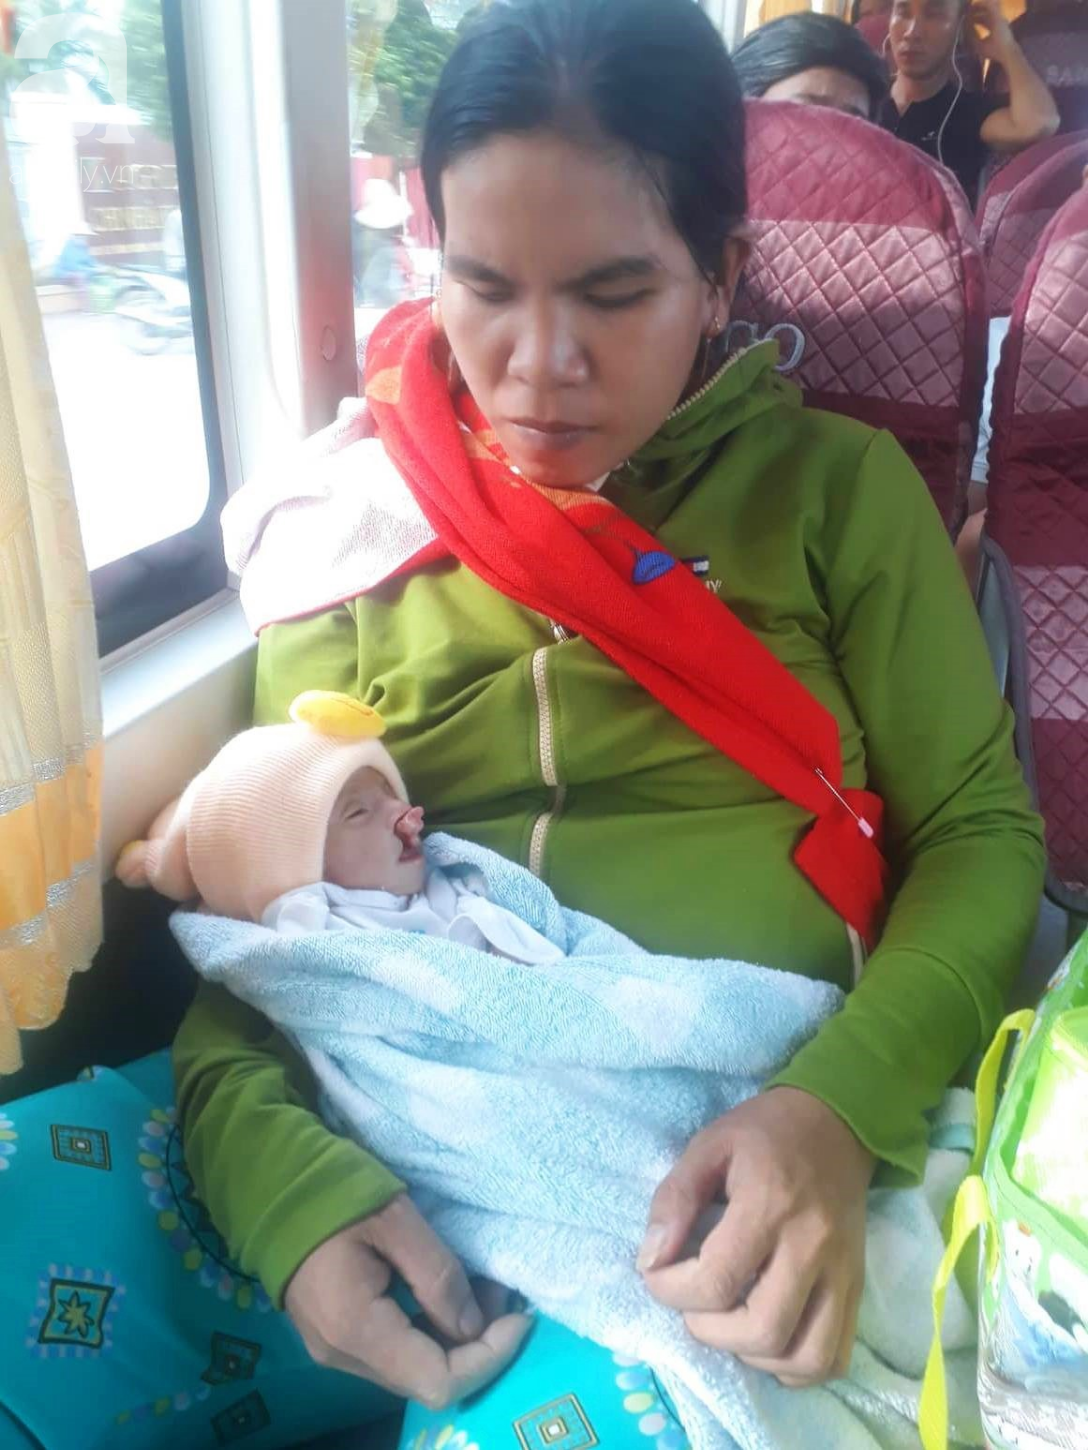 Phép màu đến với bé trai 2 tháng tuổi nặng chỉ 2 ký, mẹ nghèo không đủ tiền đưa con đi chữa bệnh - Ảnh 1.